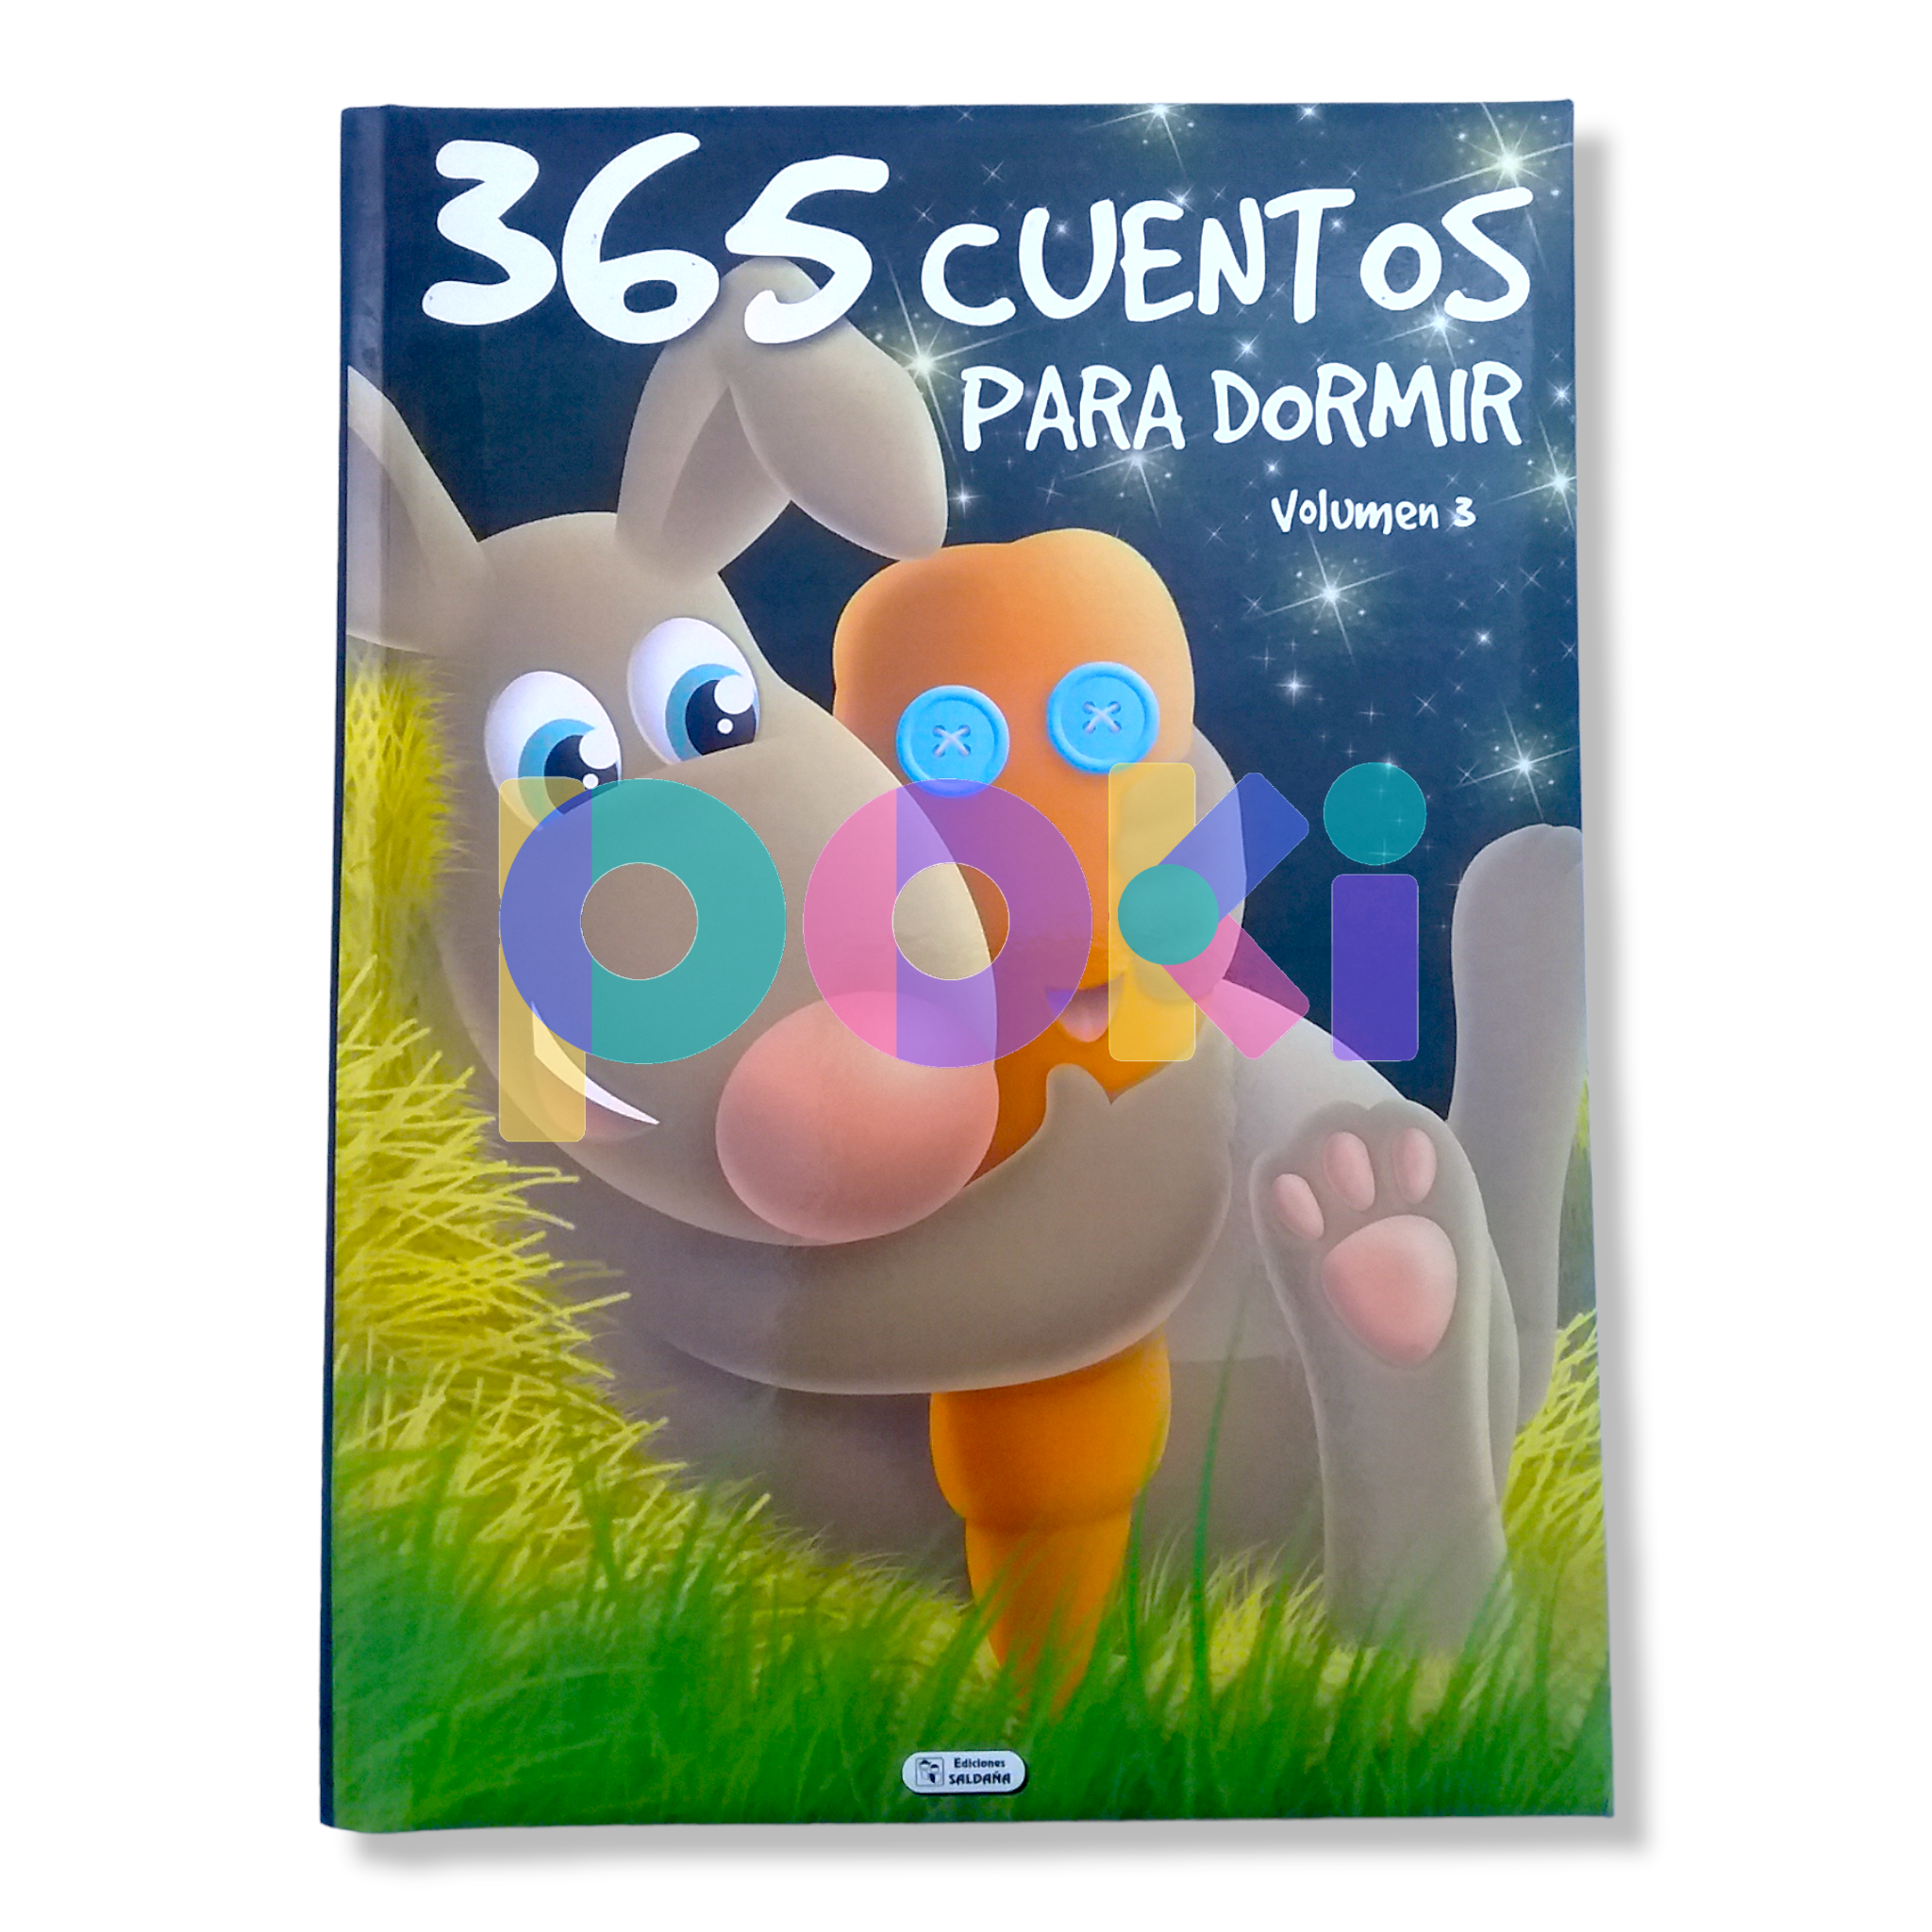 365 cuentos para Dormir Vol 3.